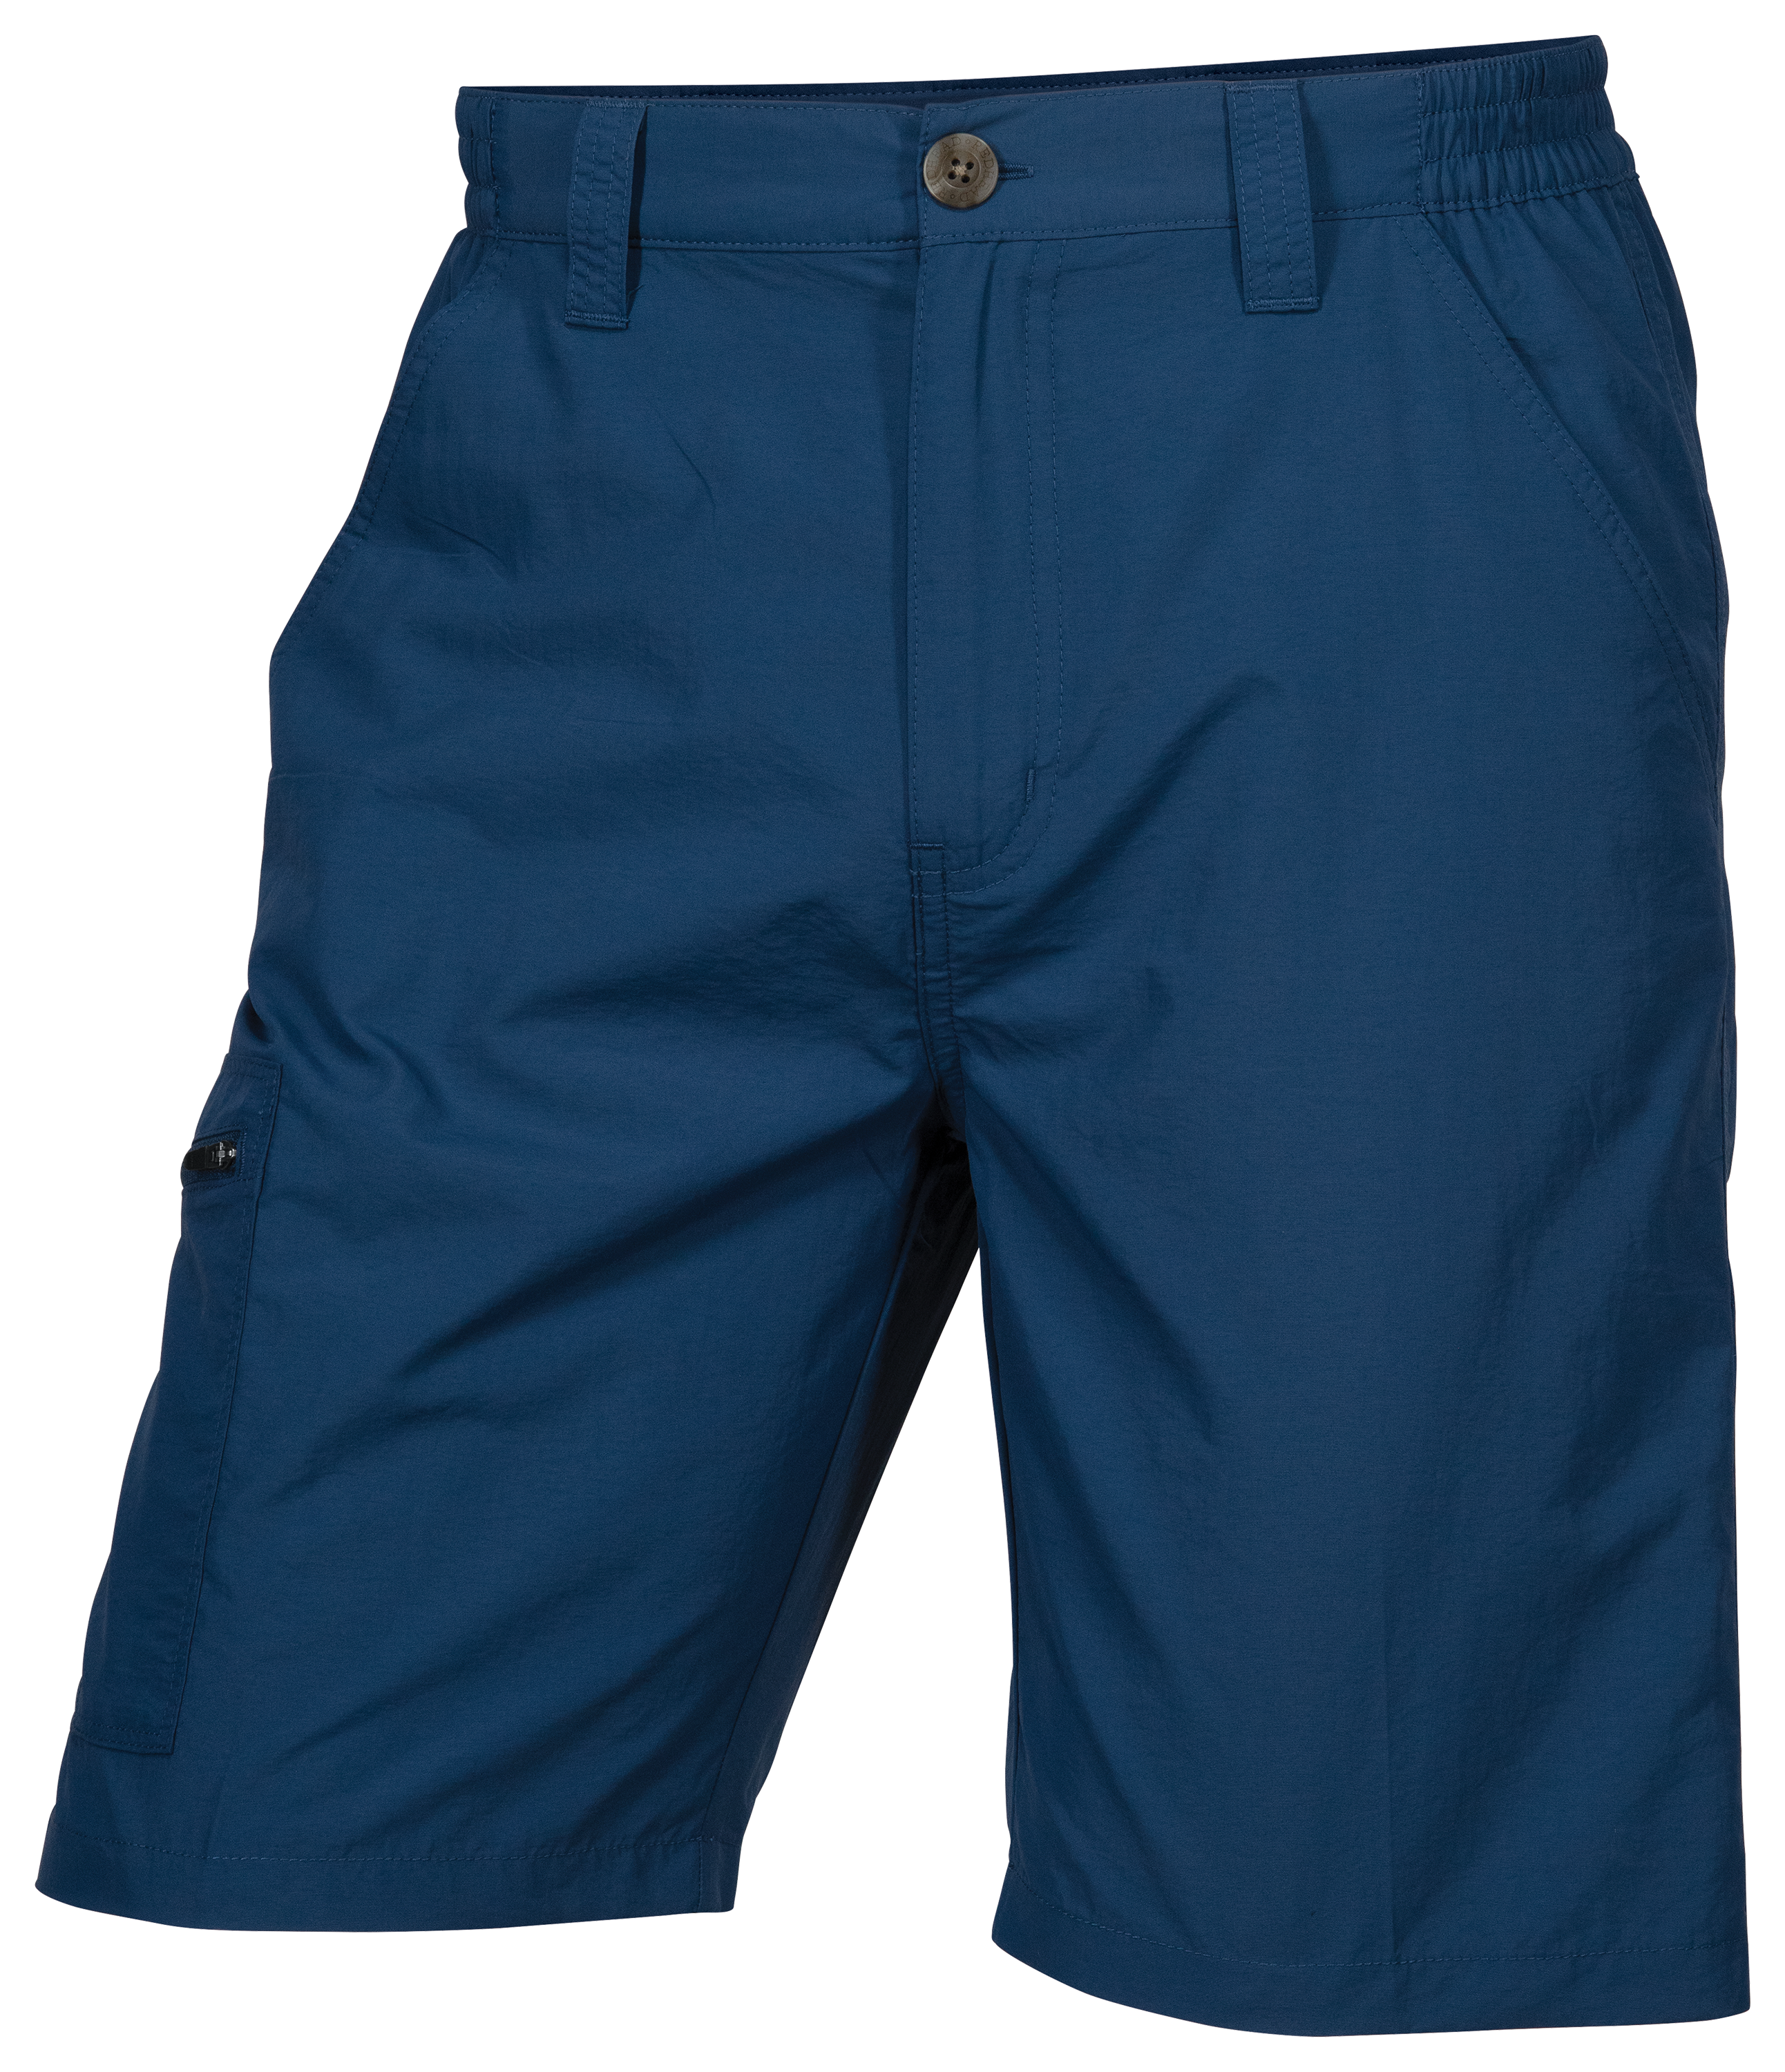 Redhead Nylon Shorts for Men - Dusky Green - 34